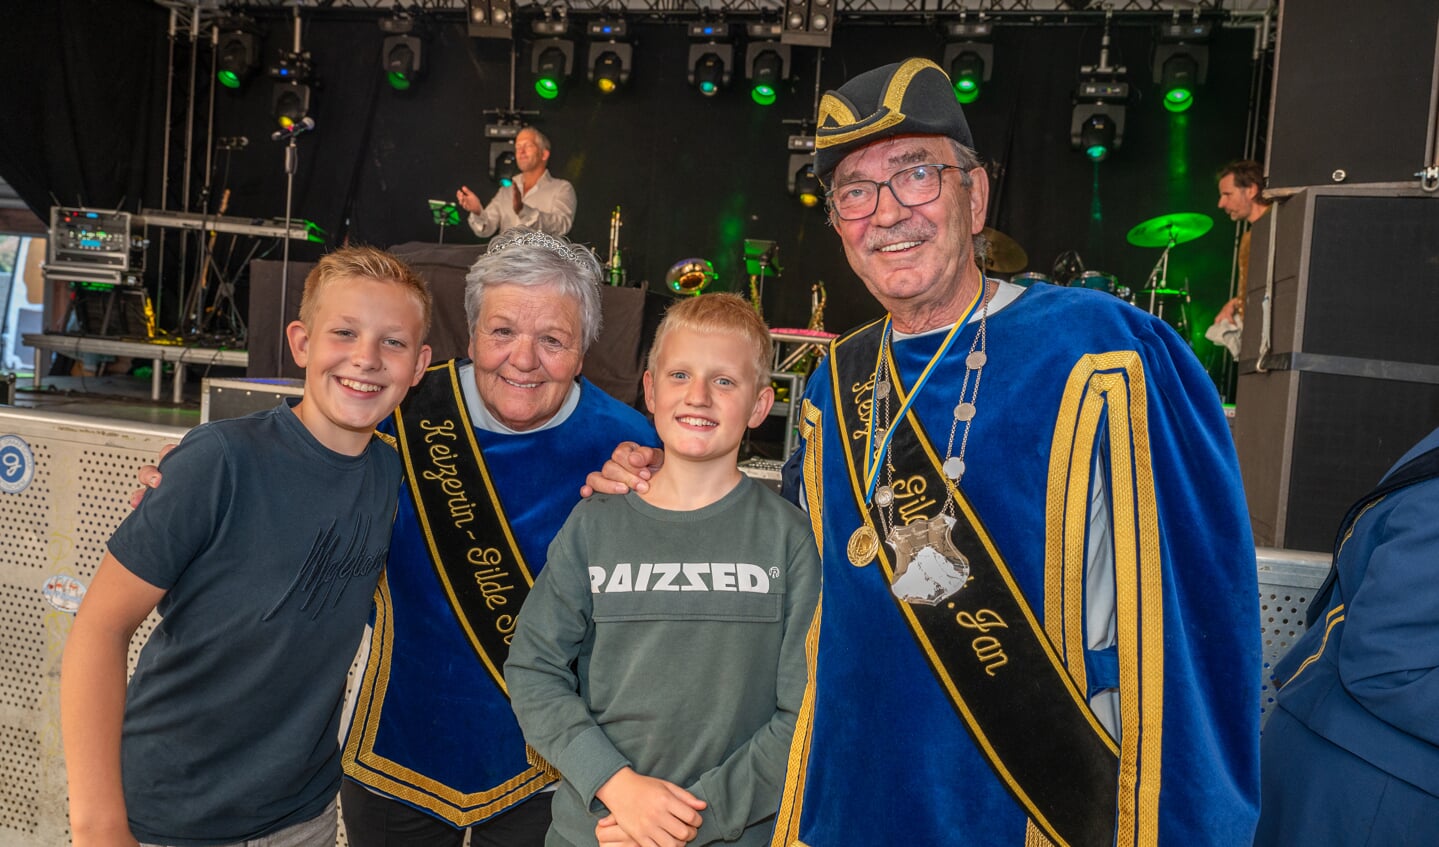 Paul Seesing, Keizer van Keijenborg 2023 met zijn Keizerin Alwien en de kleinzoons Teun (l.) en Jur (m.). Foto: Arno Wolsink